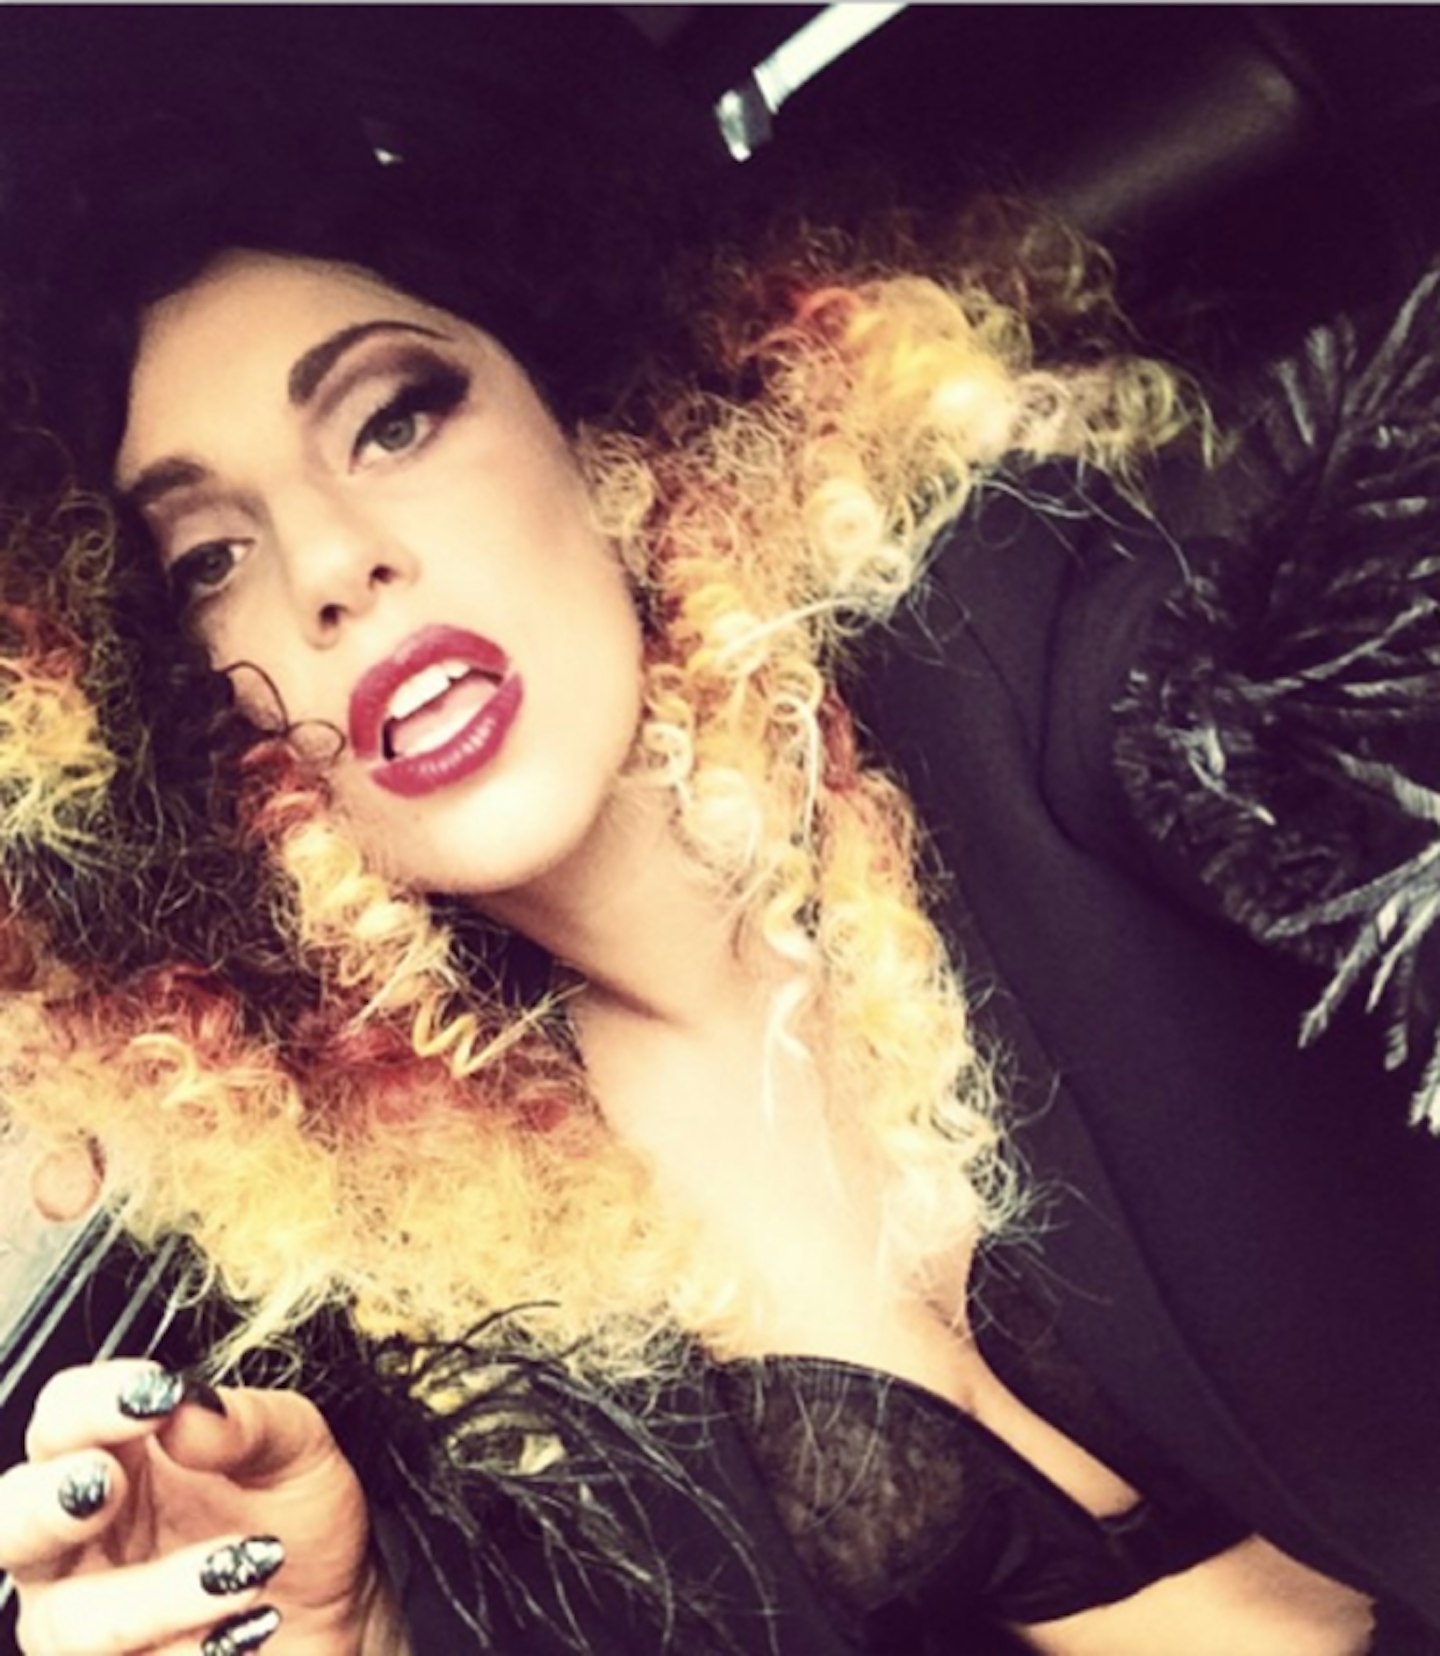 Tuesday: Lady Gaga